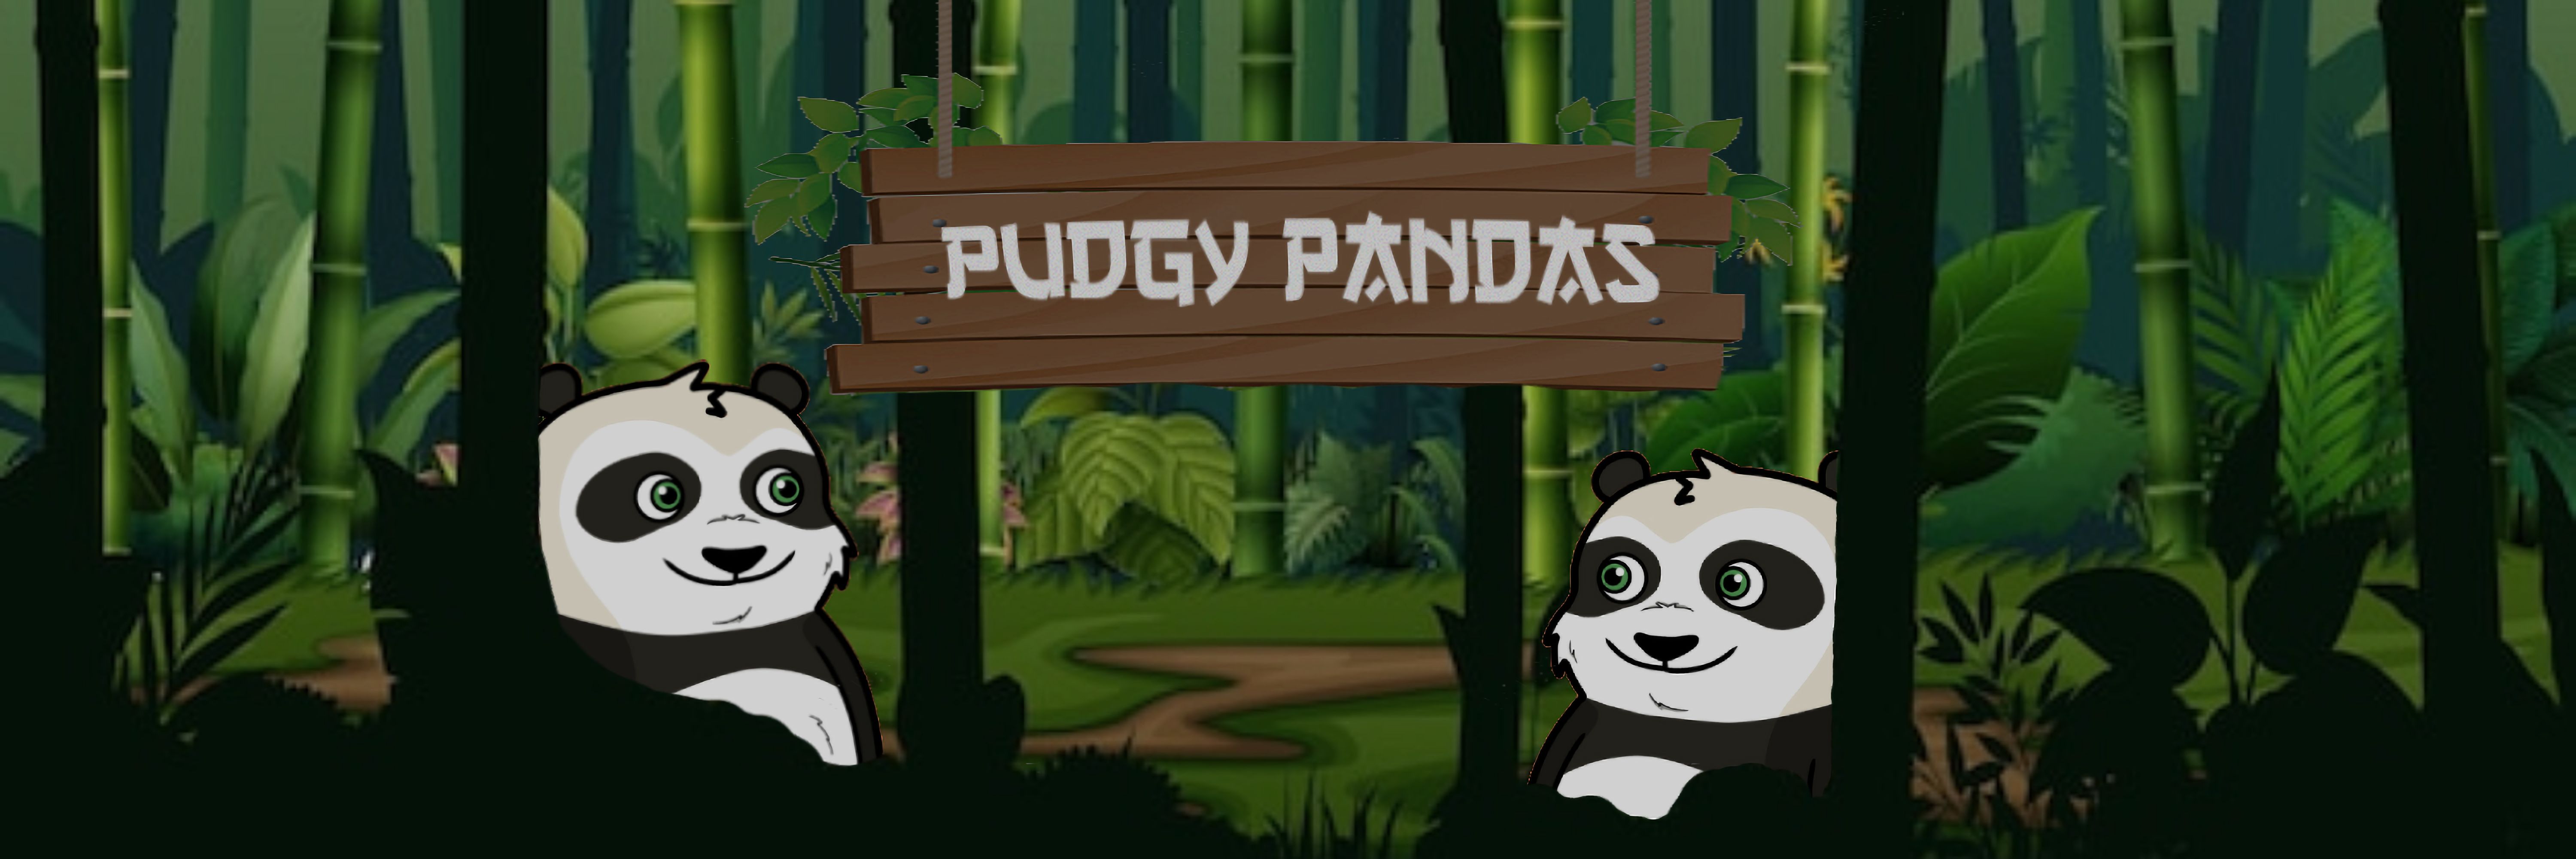 PudgyPandaCompany banner